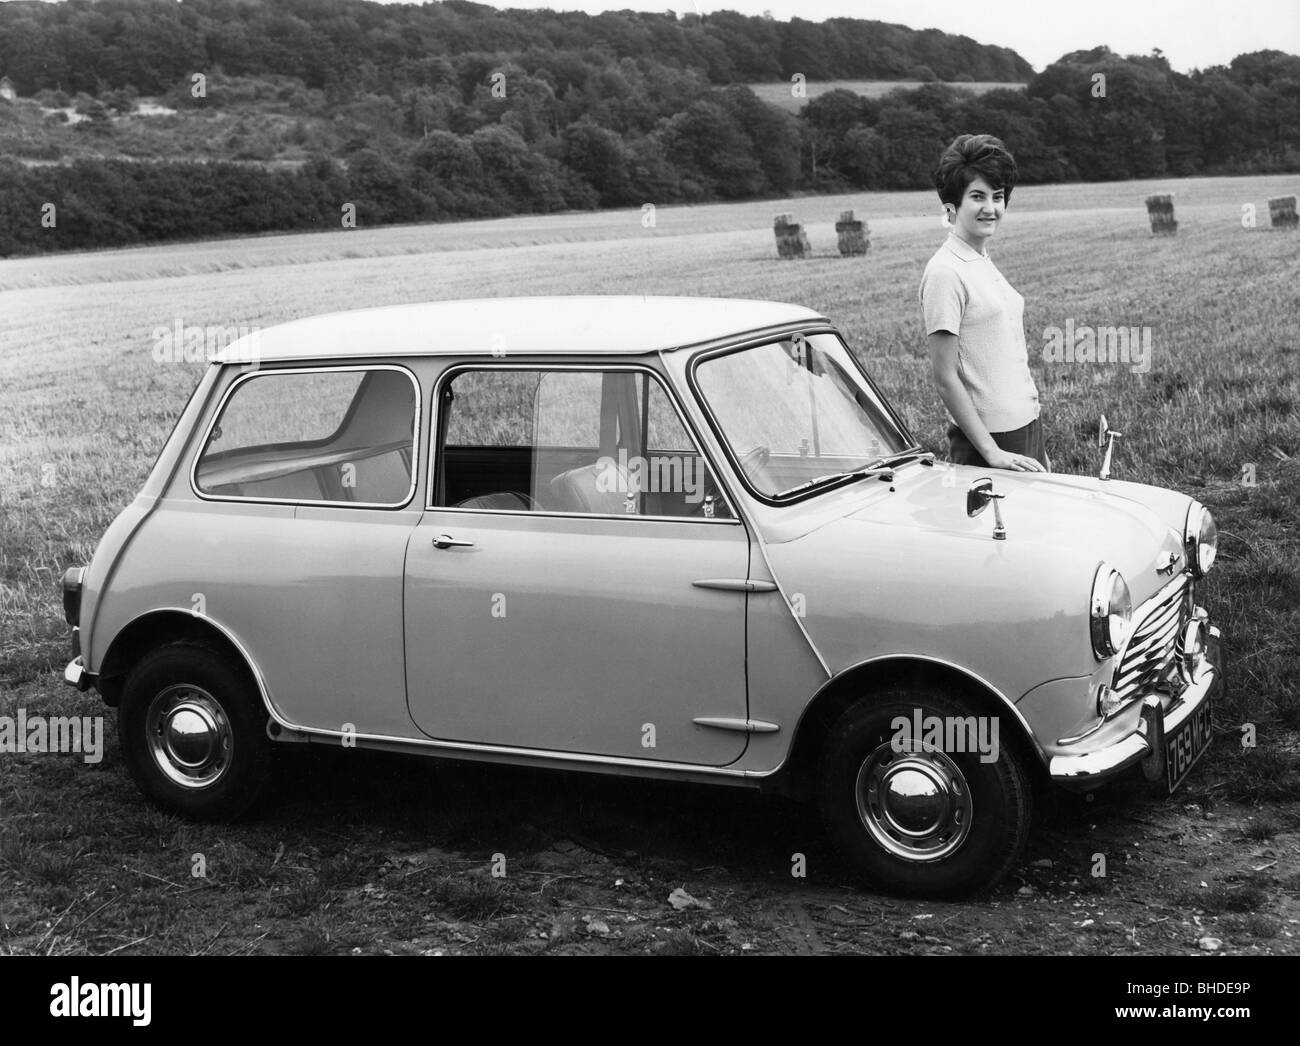 1966 Mk1 Austin Mini Cooper Mark 1 997cc Barn Find — Super Coopers